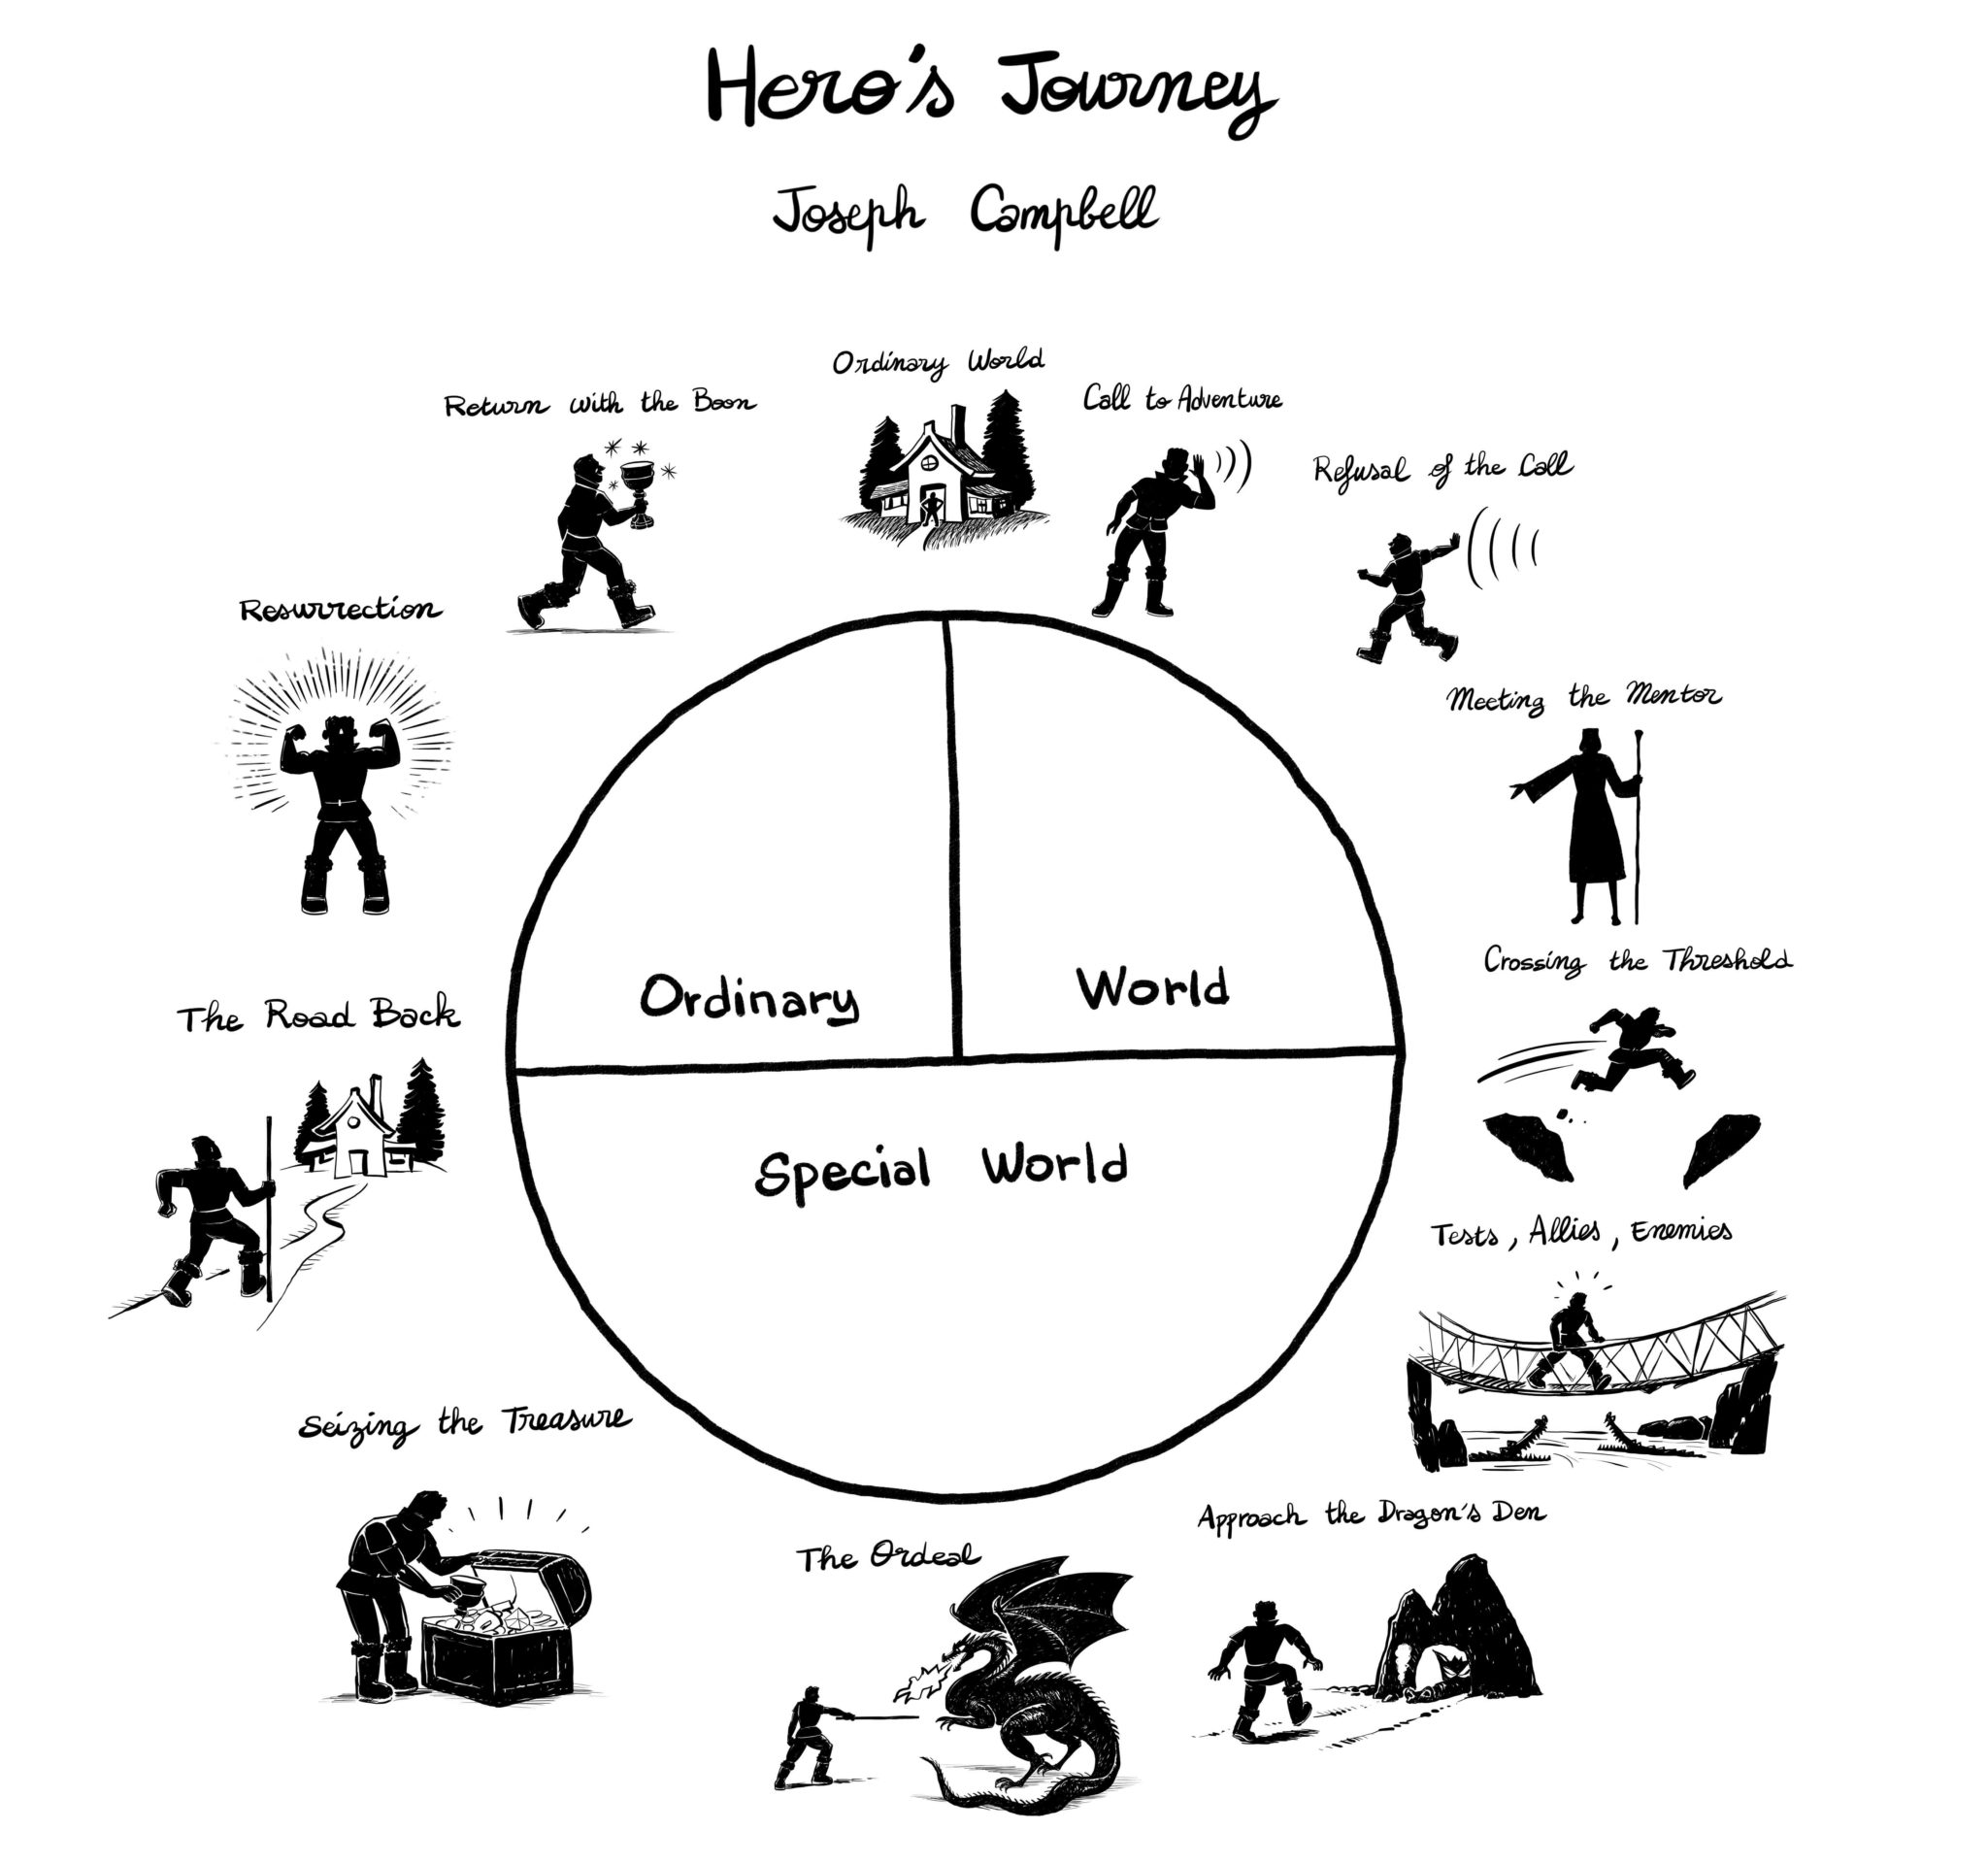 hero's journey mind map